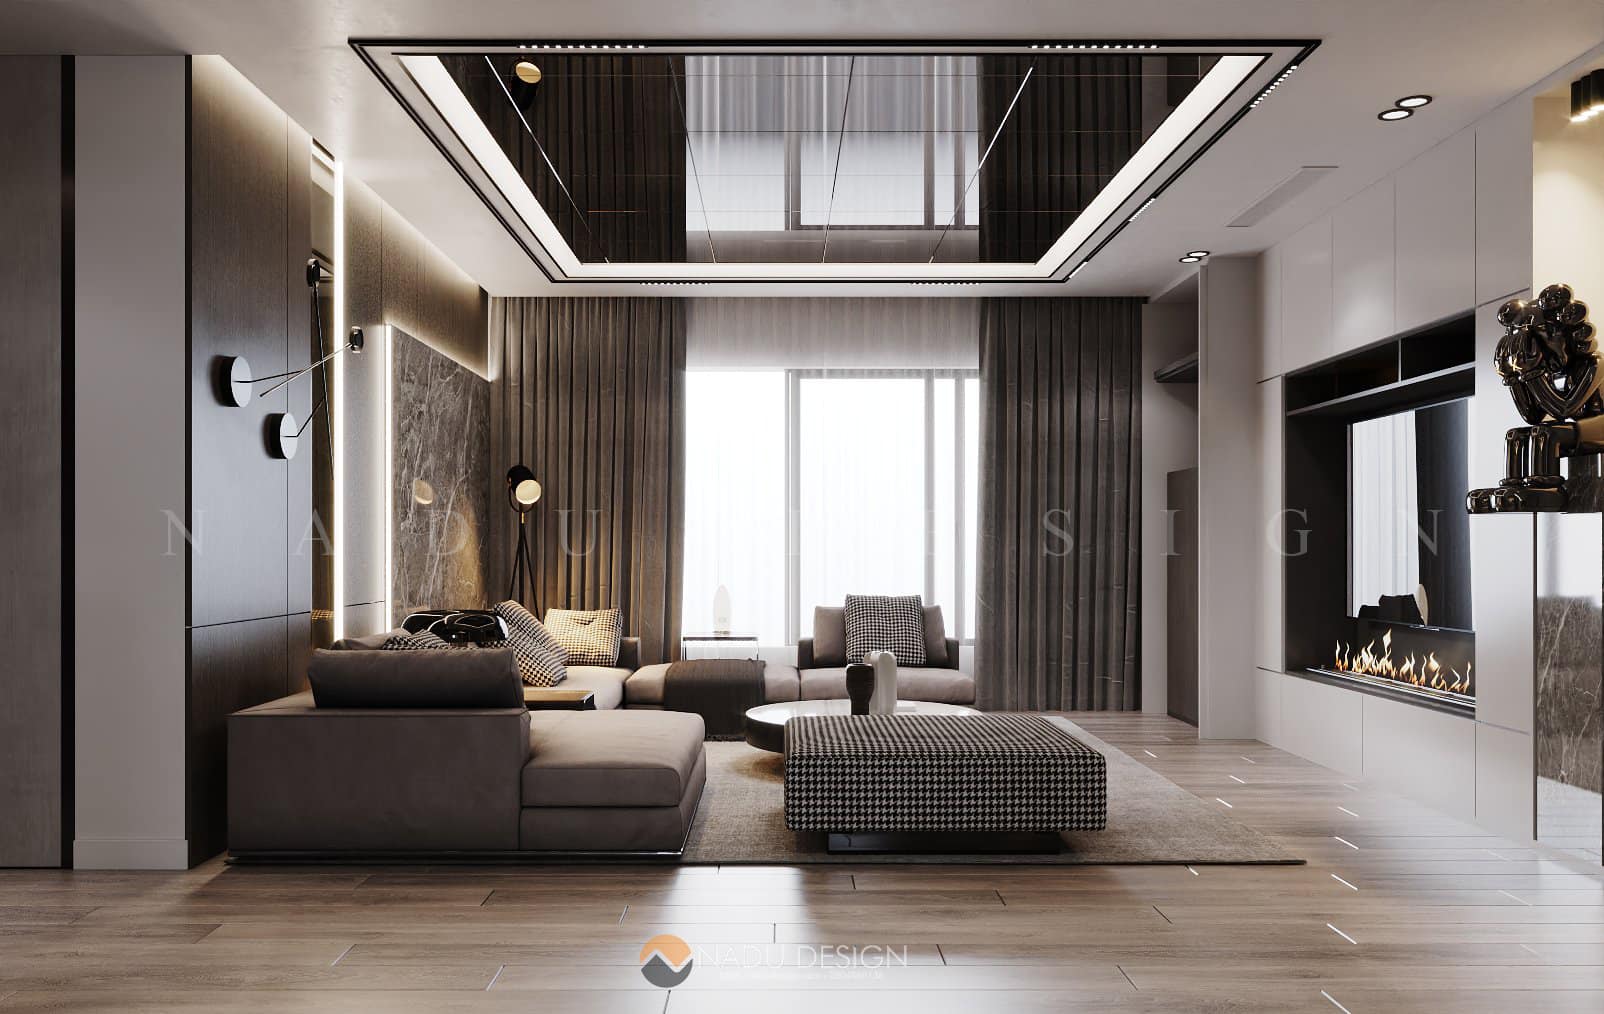 30 mẫu thiết kế nội thất chung cư đẹp hiện đại nhất từ An Mộc